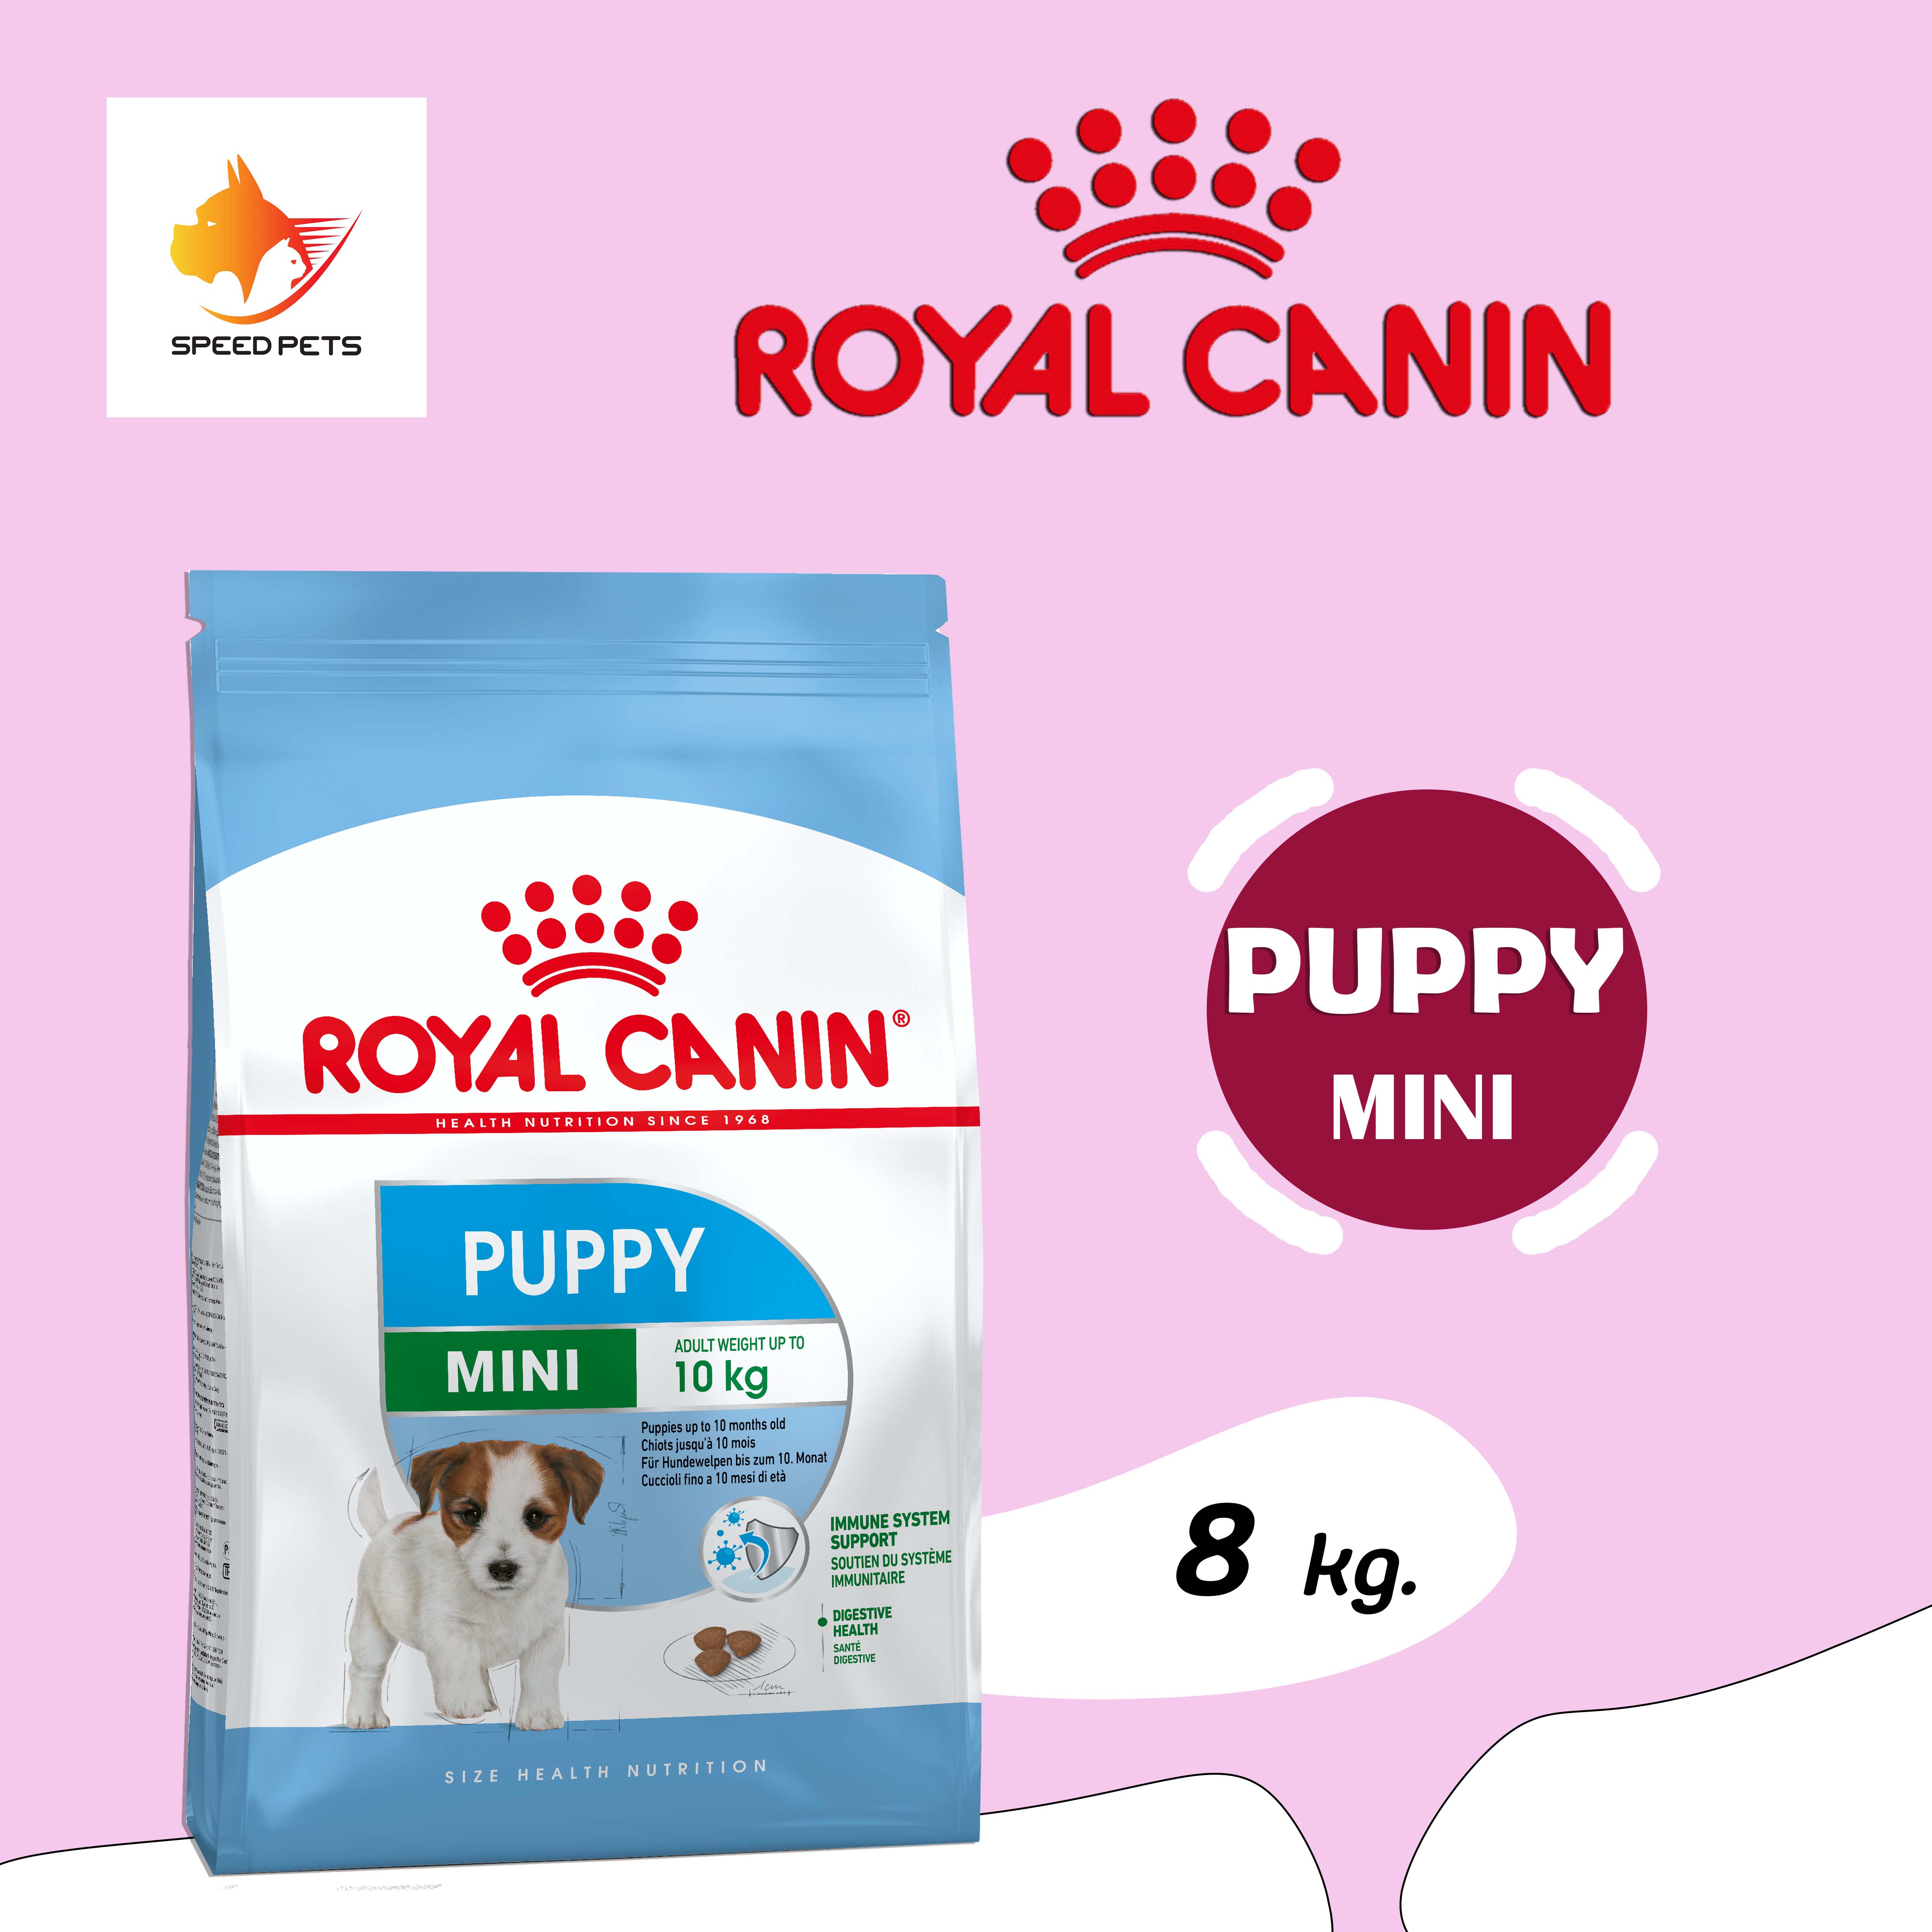 Royal Canin Mini Puppy Food โรยัล คานิน อาหารลูกสุนัข พันธุ์เล็ก ขนาดเล็ก เม็ดเล็ก ขนาด 8 kg